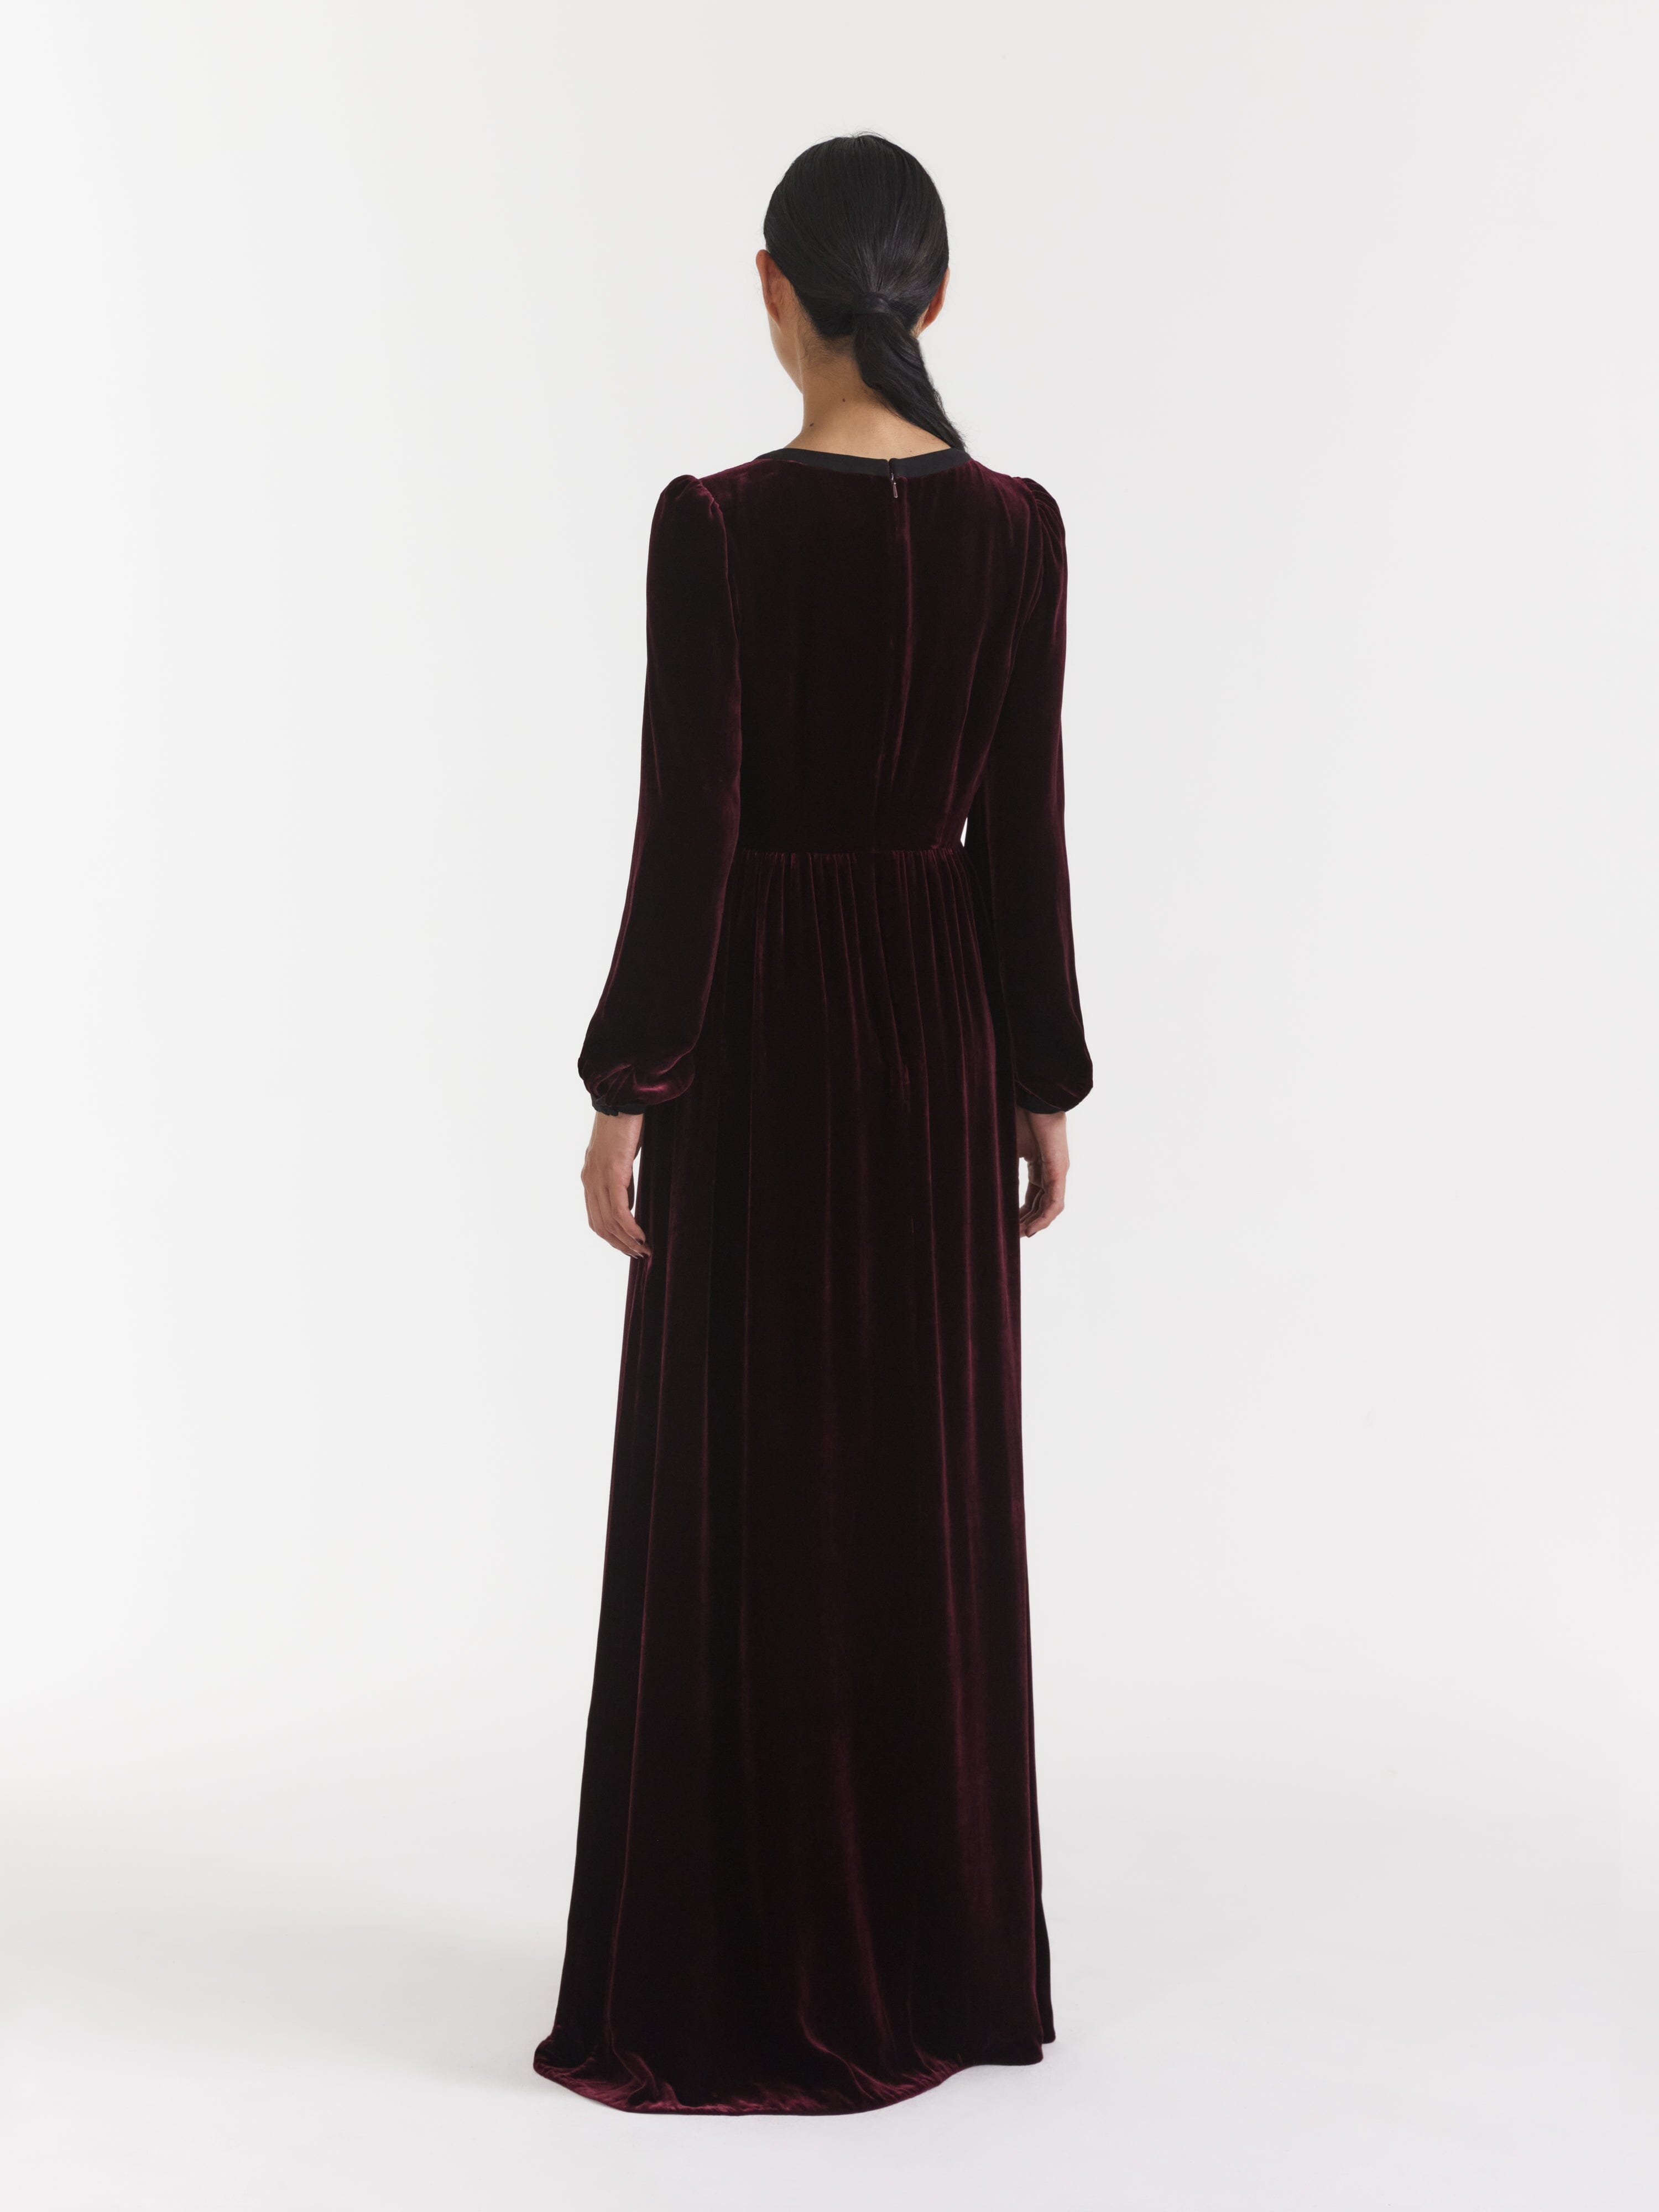 Velvet Dress - Buy Velvet Dress online at Best Prices in India |  Flipkart.com